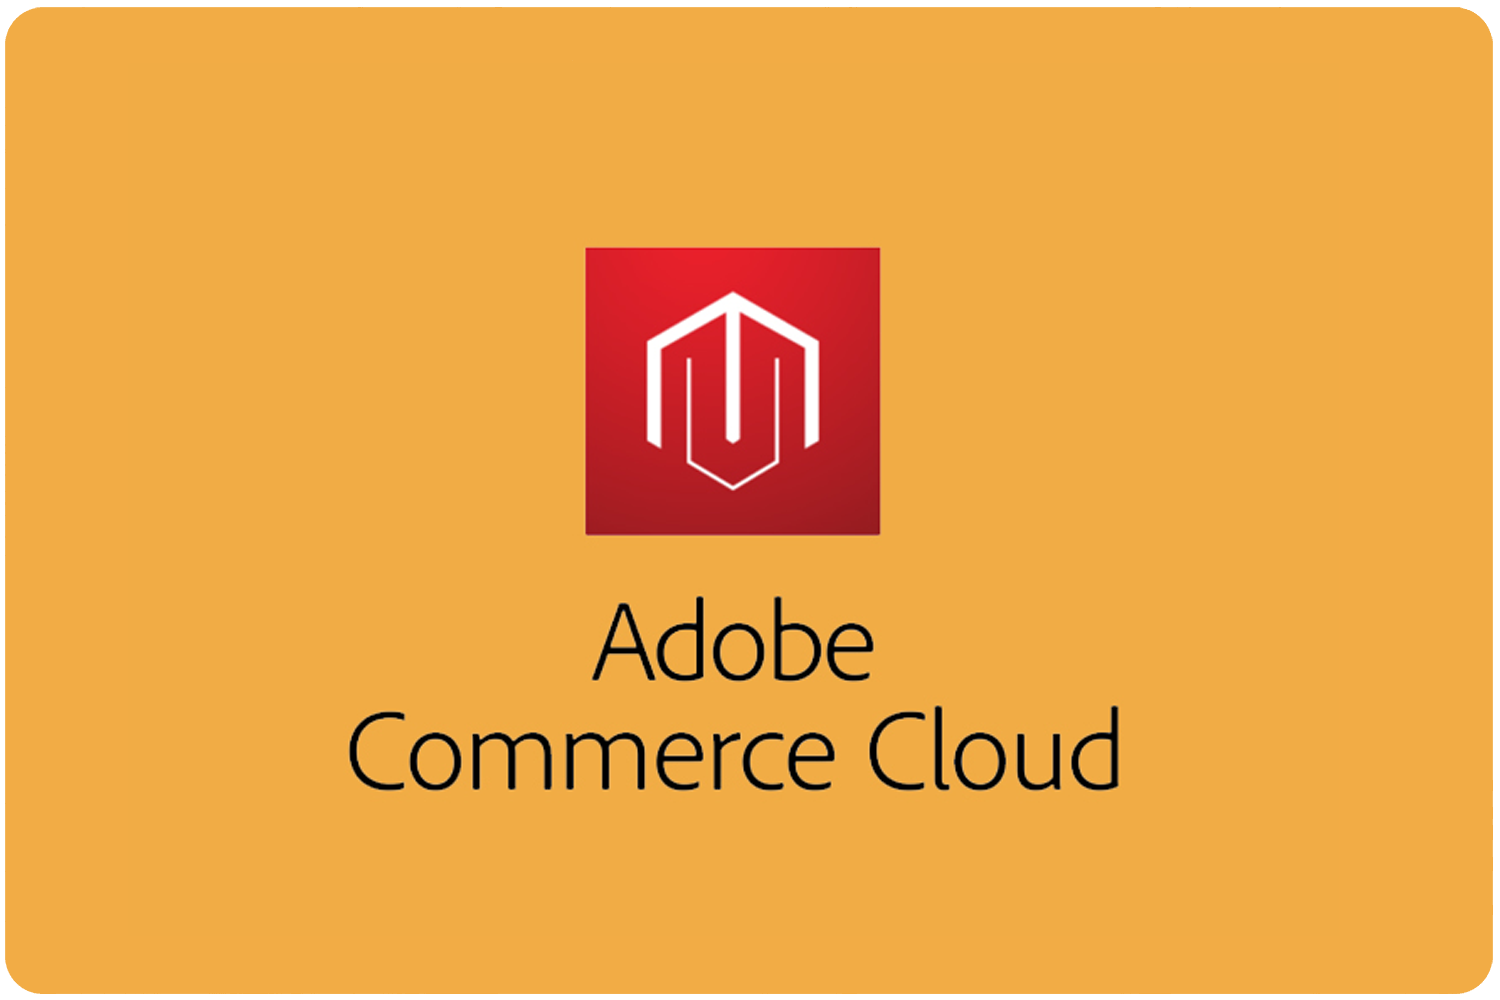 Adobe Commerce Cloud